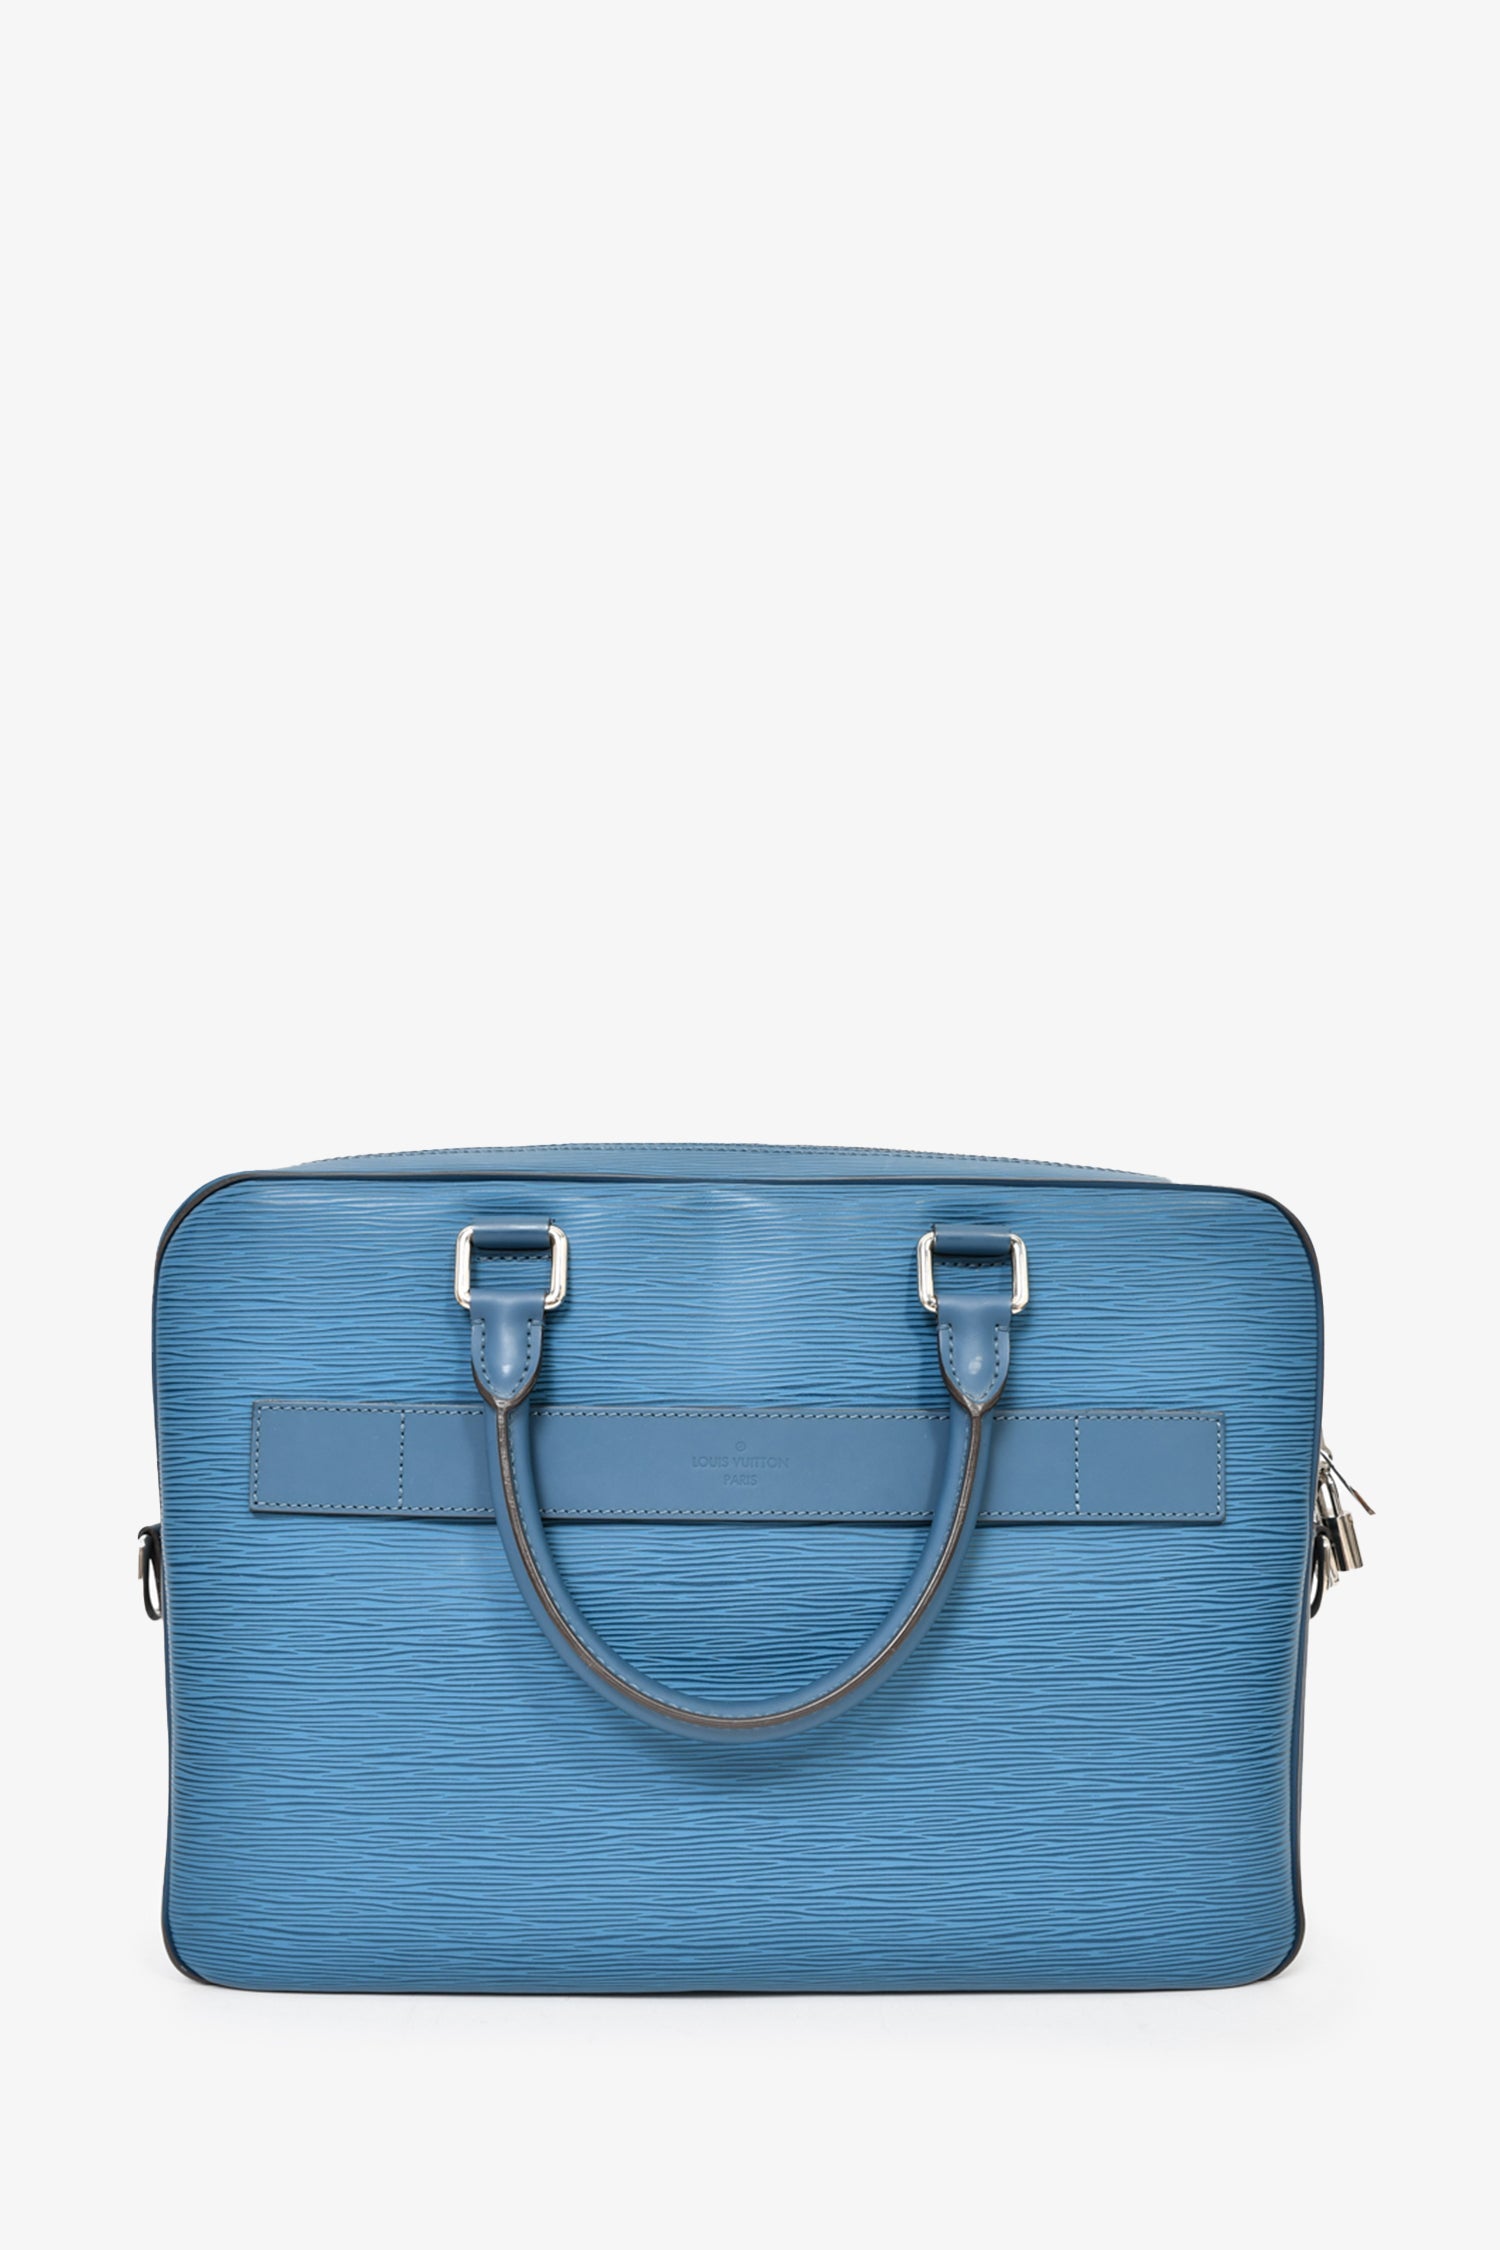 Louis Vuitton Blue Epi Leather 'Porte Documents' Briefcase w